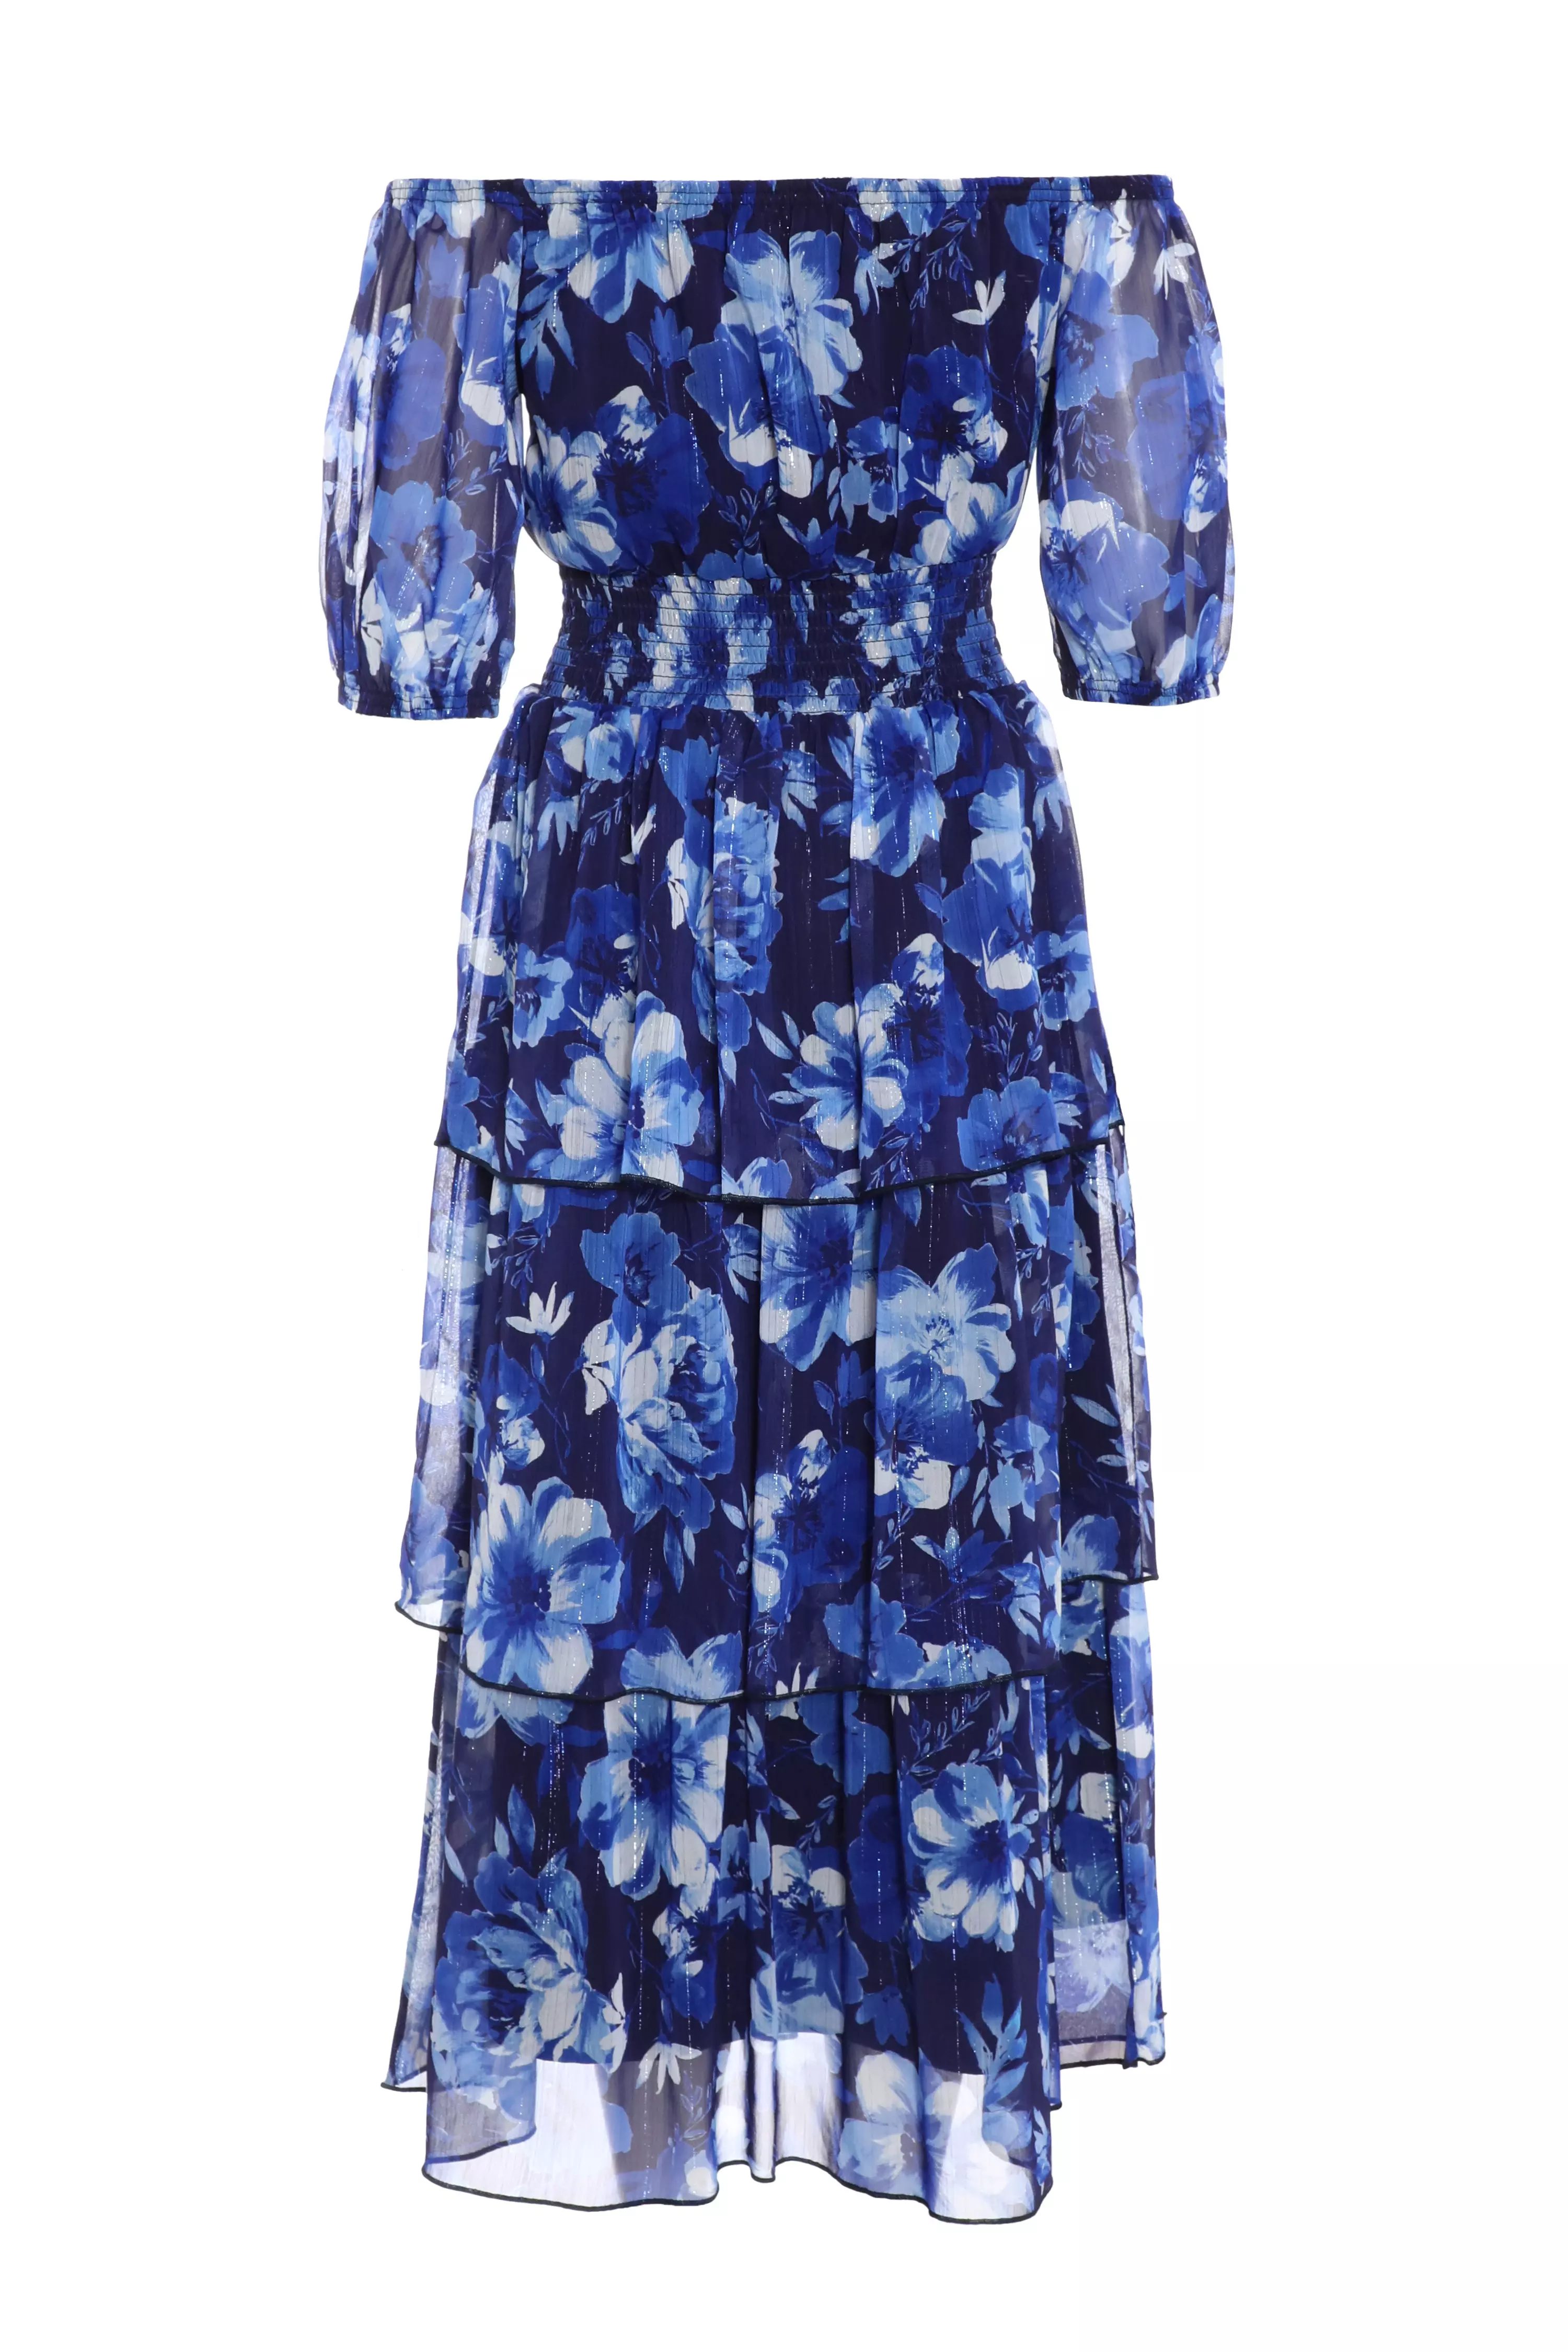 Navy Chiffon Floral Bardot Midi Dress - QUIZ Clothing